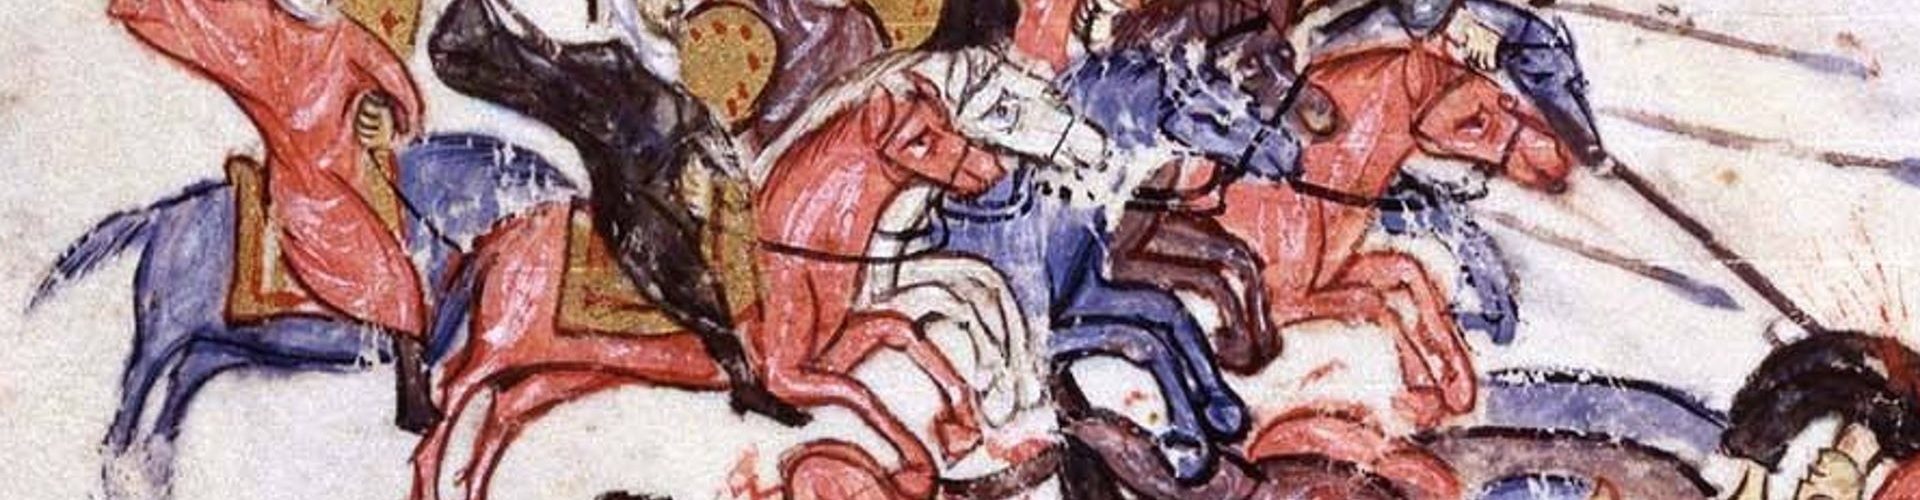 Krwawy odwrót wojsk bizantyńskich po bitwie pod Azaz.